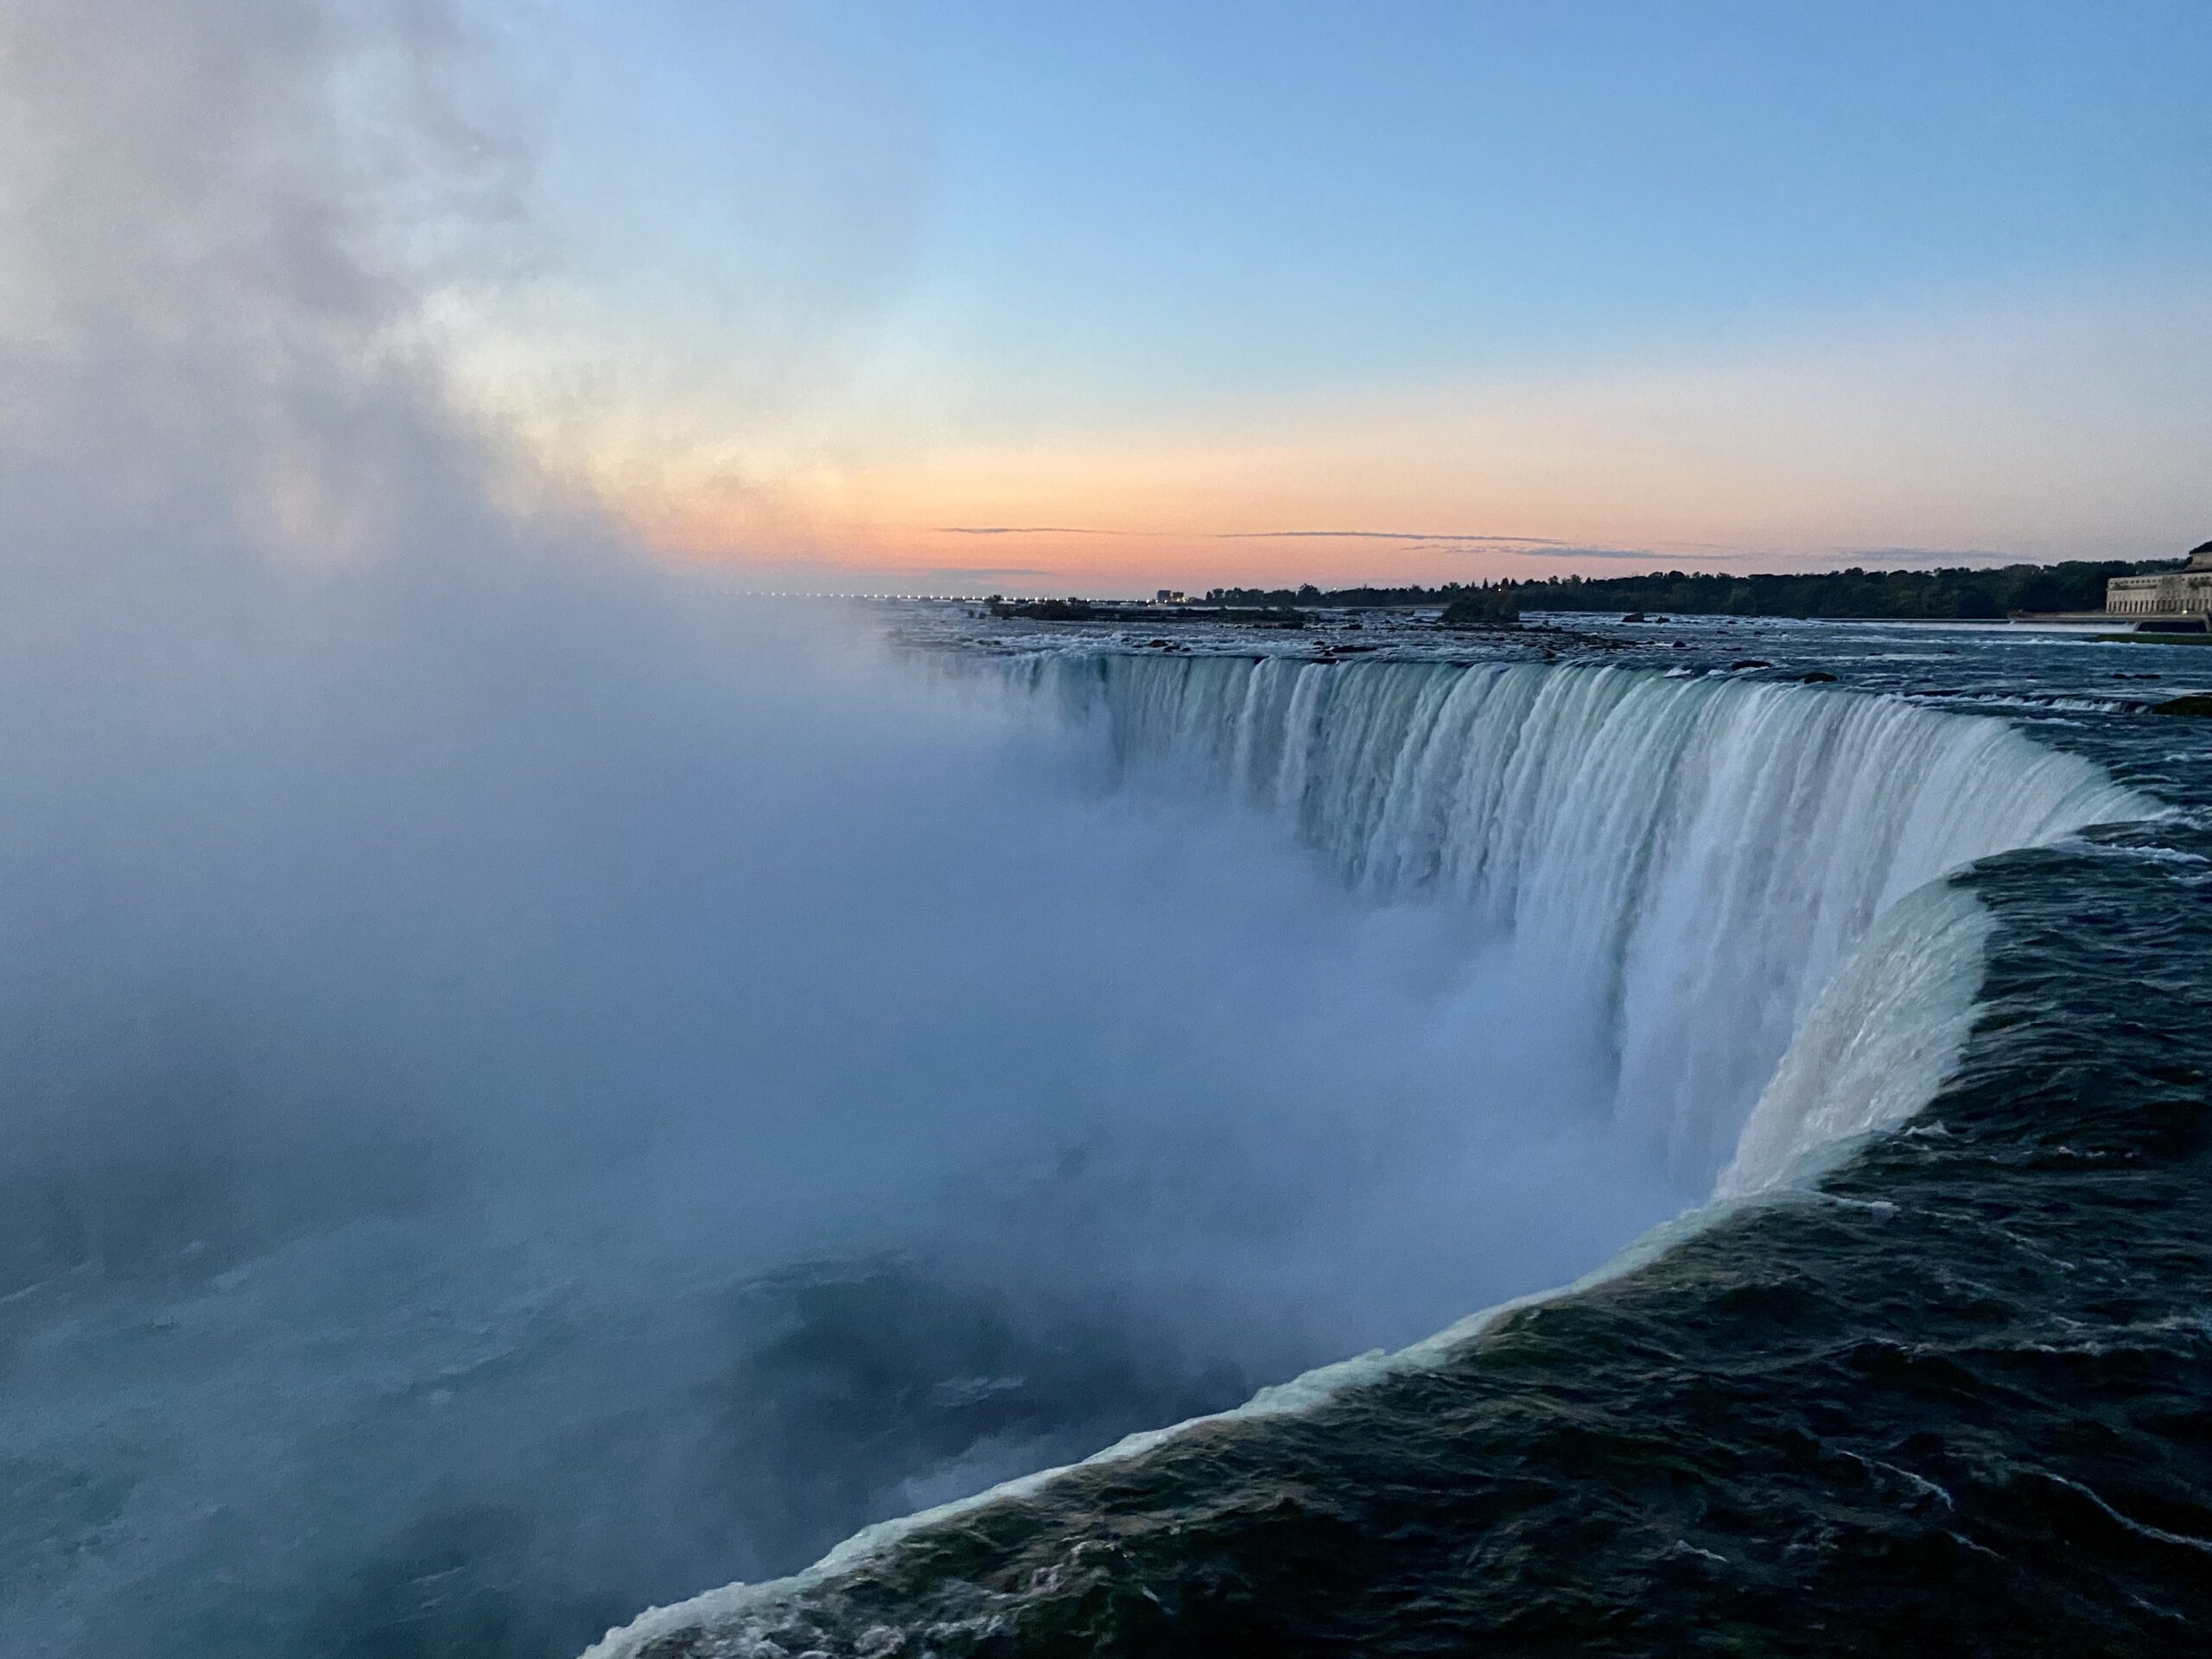 Niagara Falls by sunrise